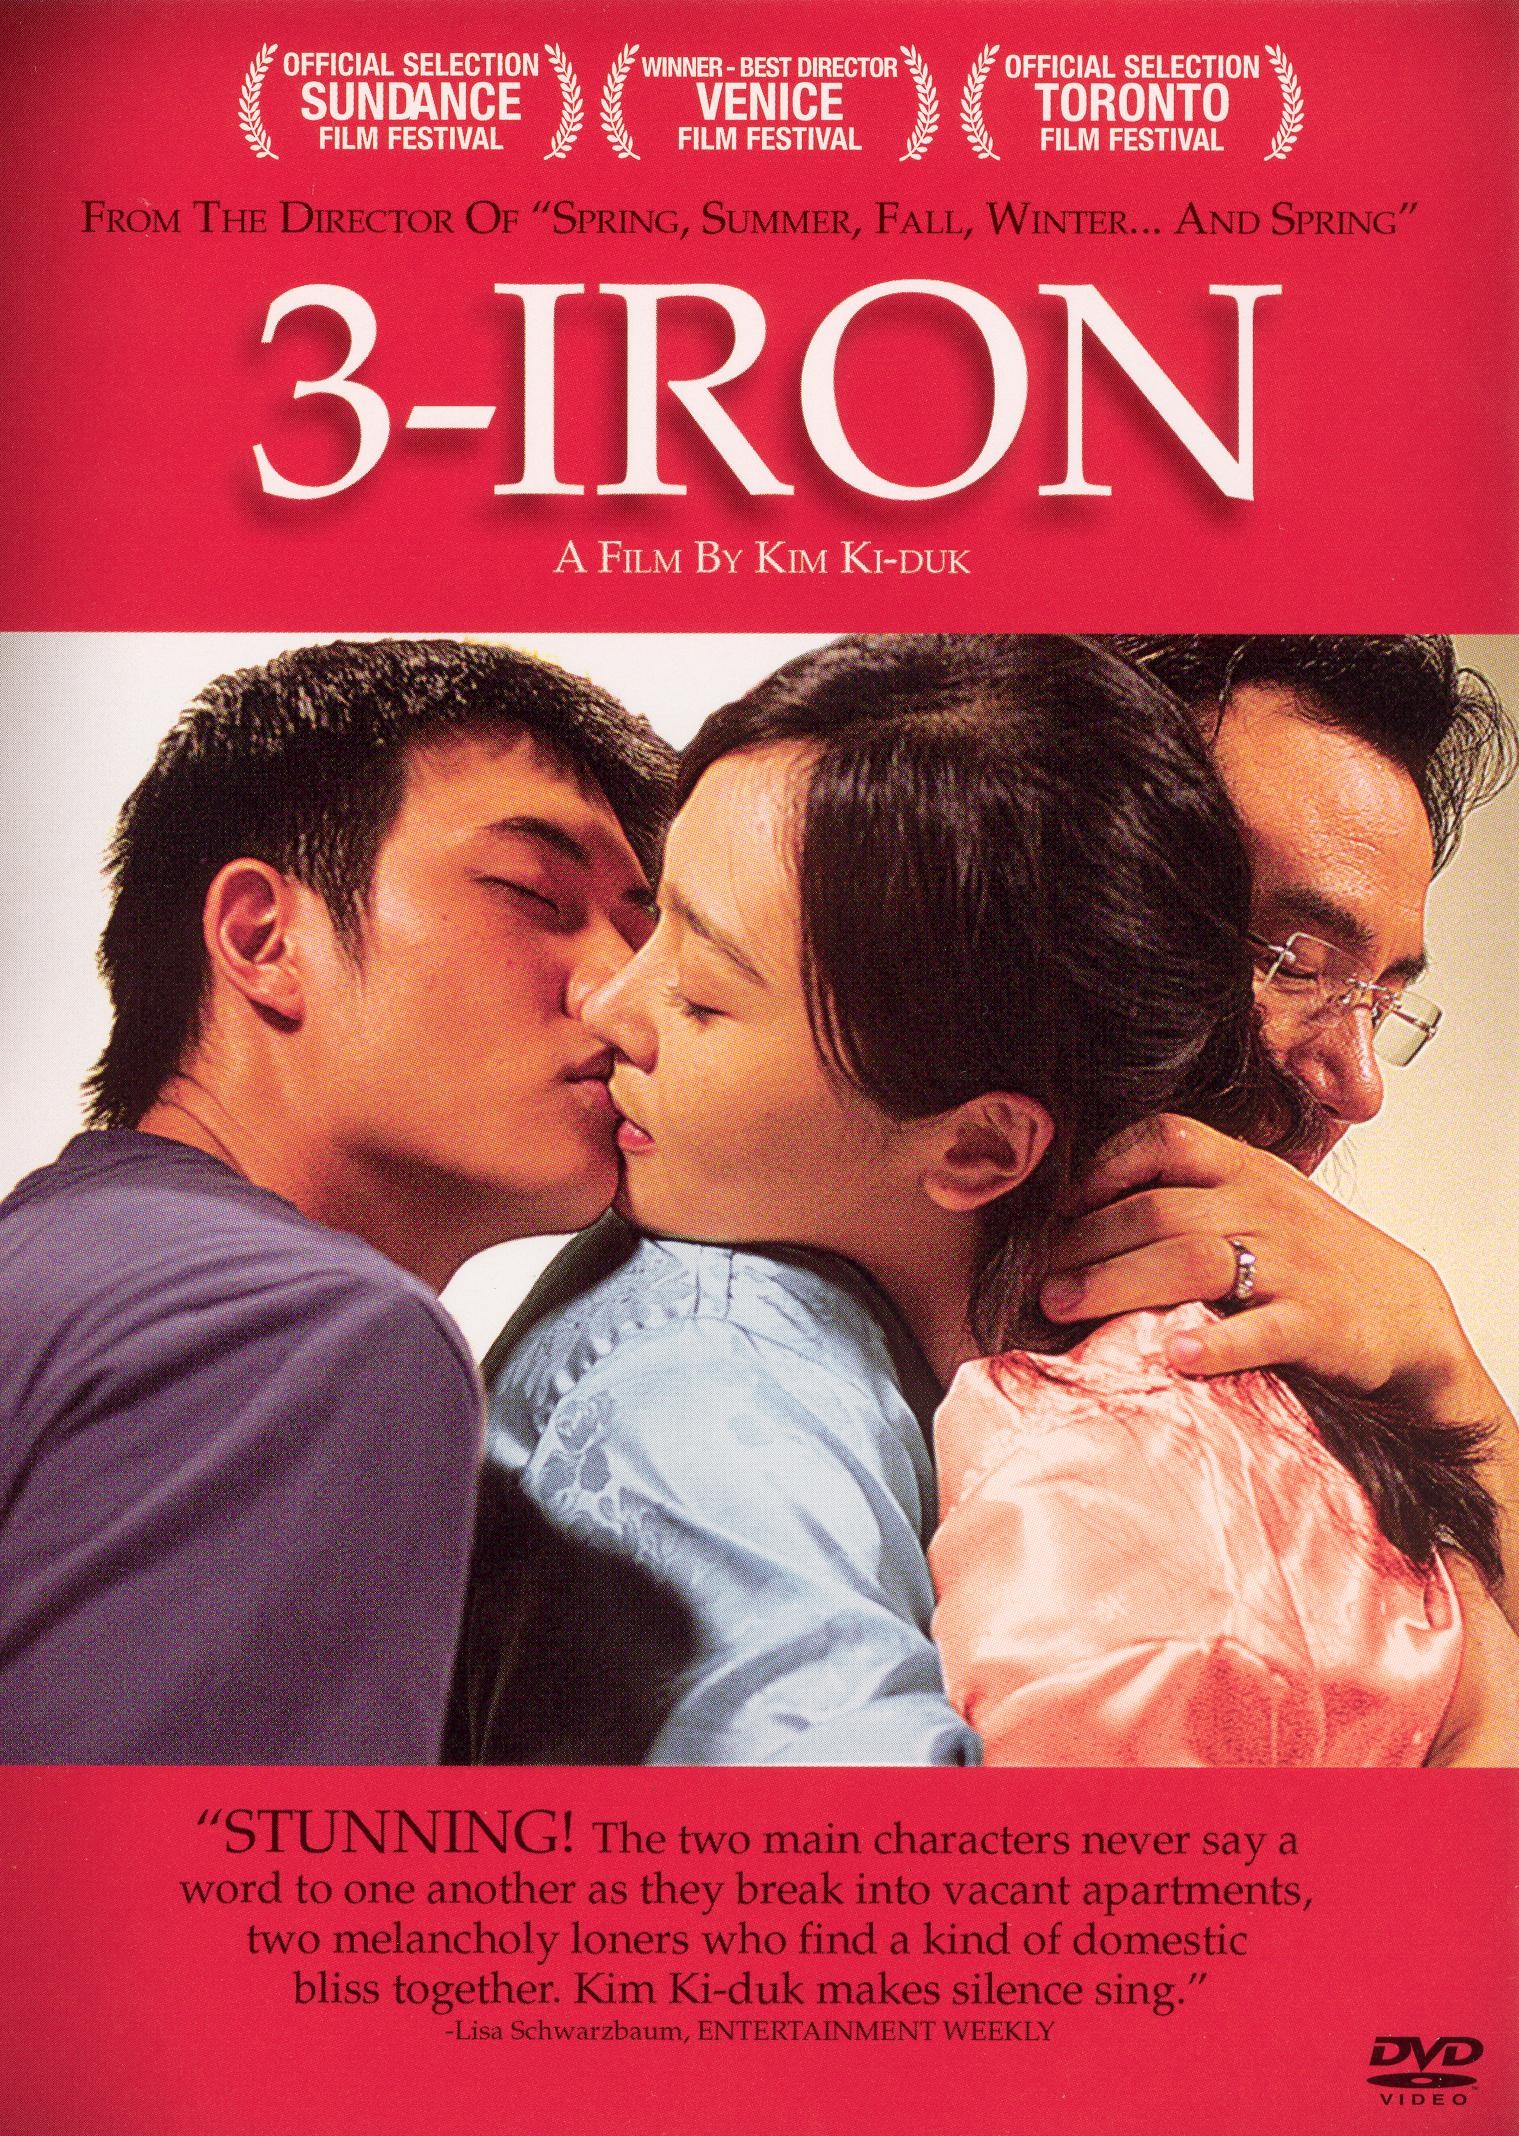 Best Romantic Korean Movie 3-Iron - Rotten Tomatoes